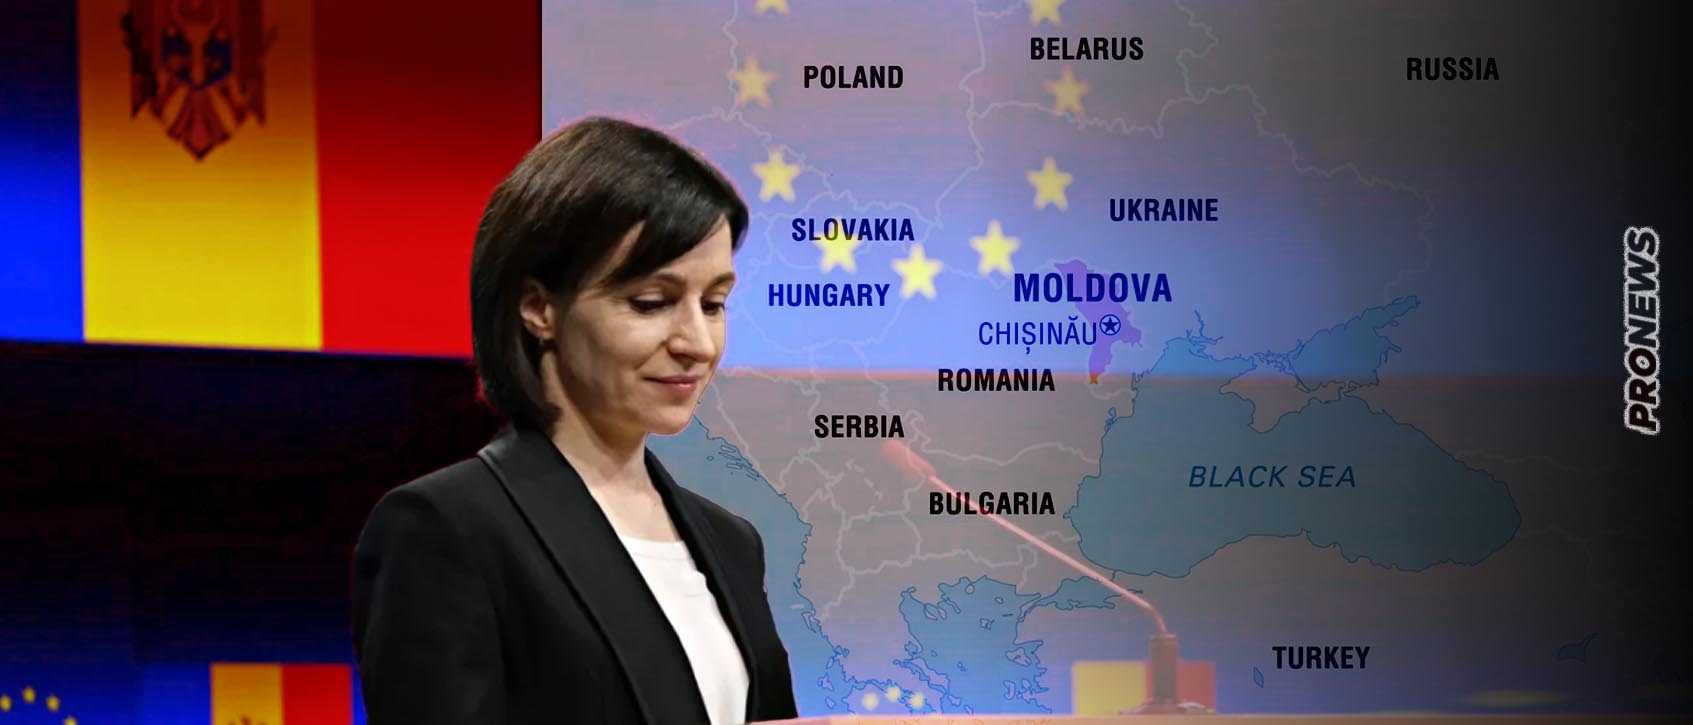 Σημαντική εξέλιξη στην Μολδαβία: Τα κόμματα της αντιπολίτευσης δημιουργούν ενιαίο «μπλοκ» κατά της φιλοδυτικής προέδρου M.Σάντου